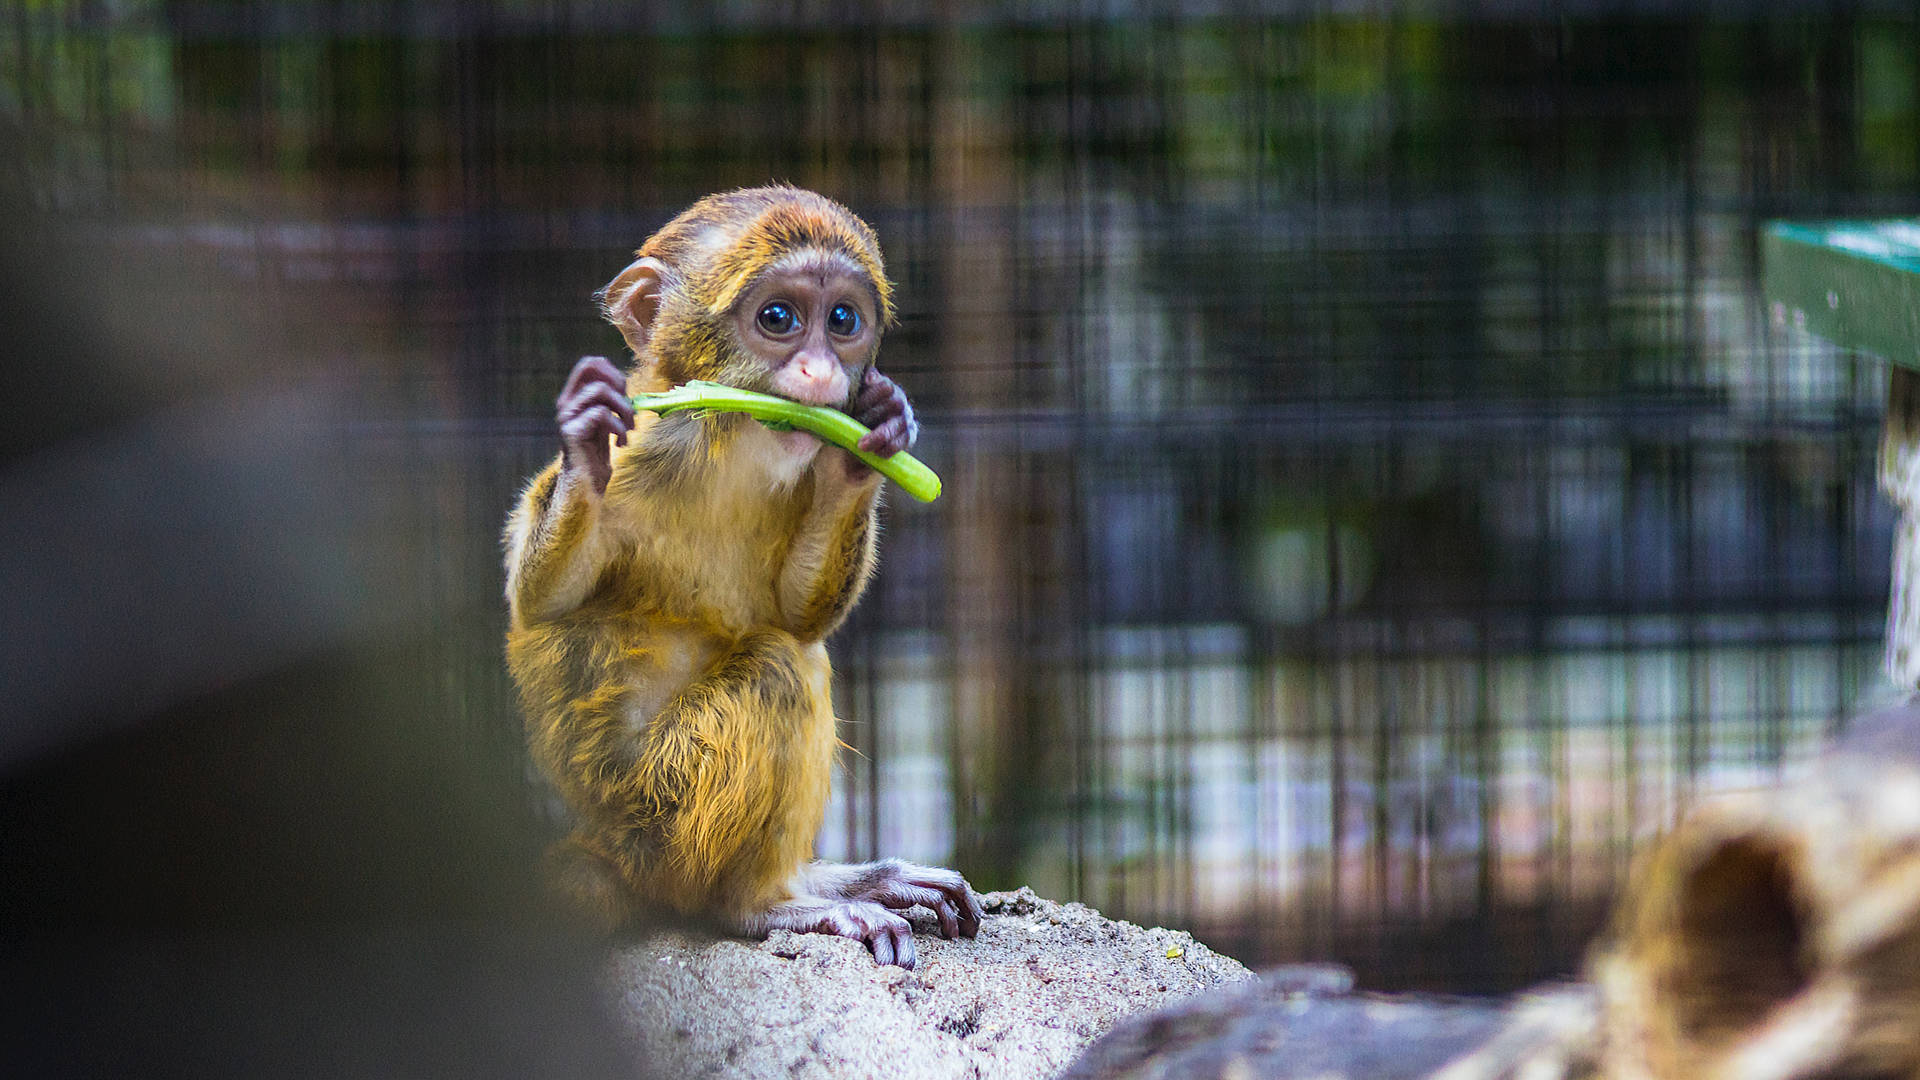 Cute Animal Monkey Infant Eating Celery Background